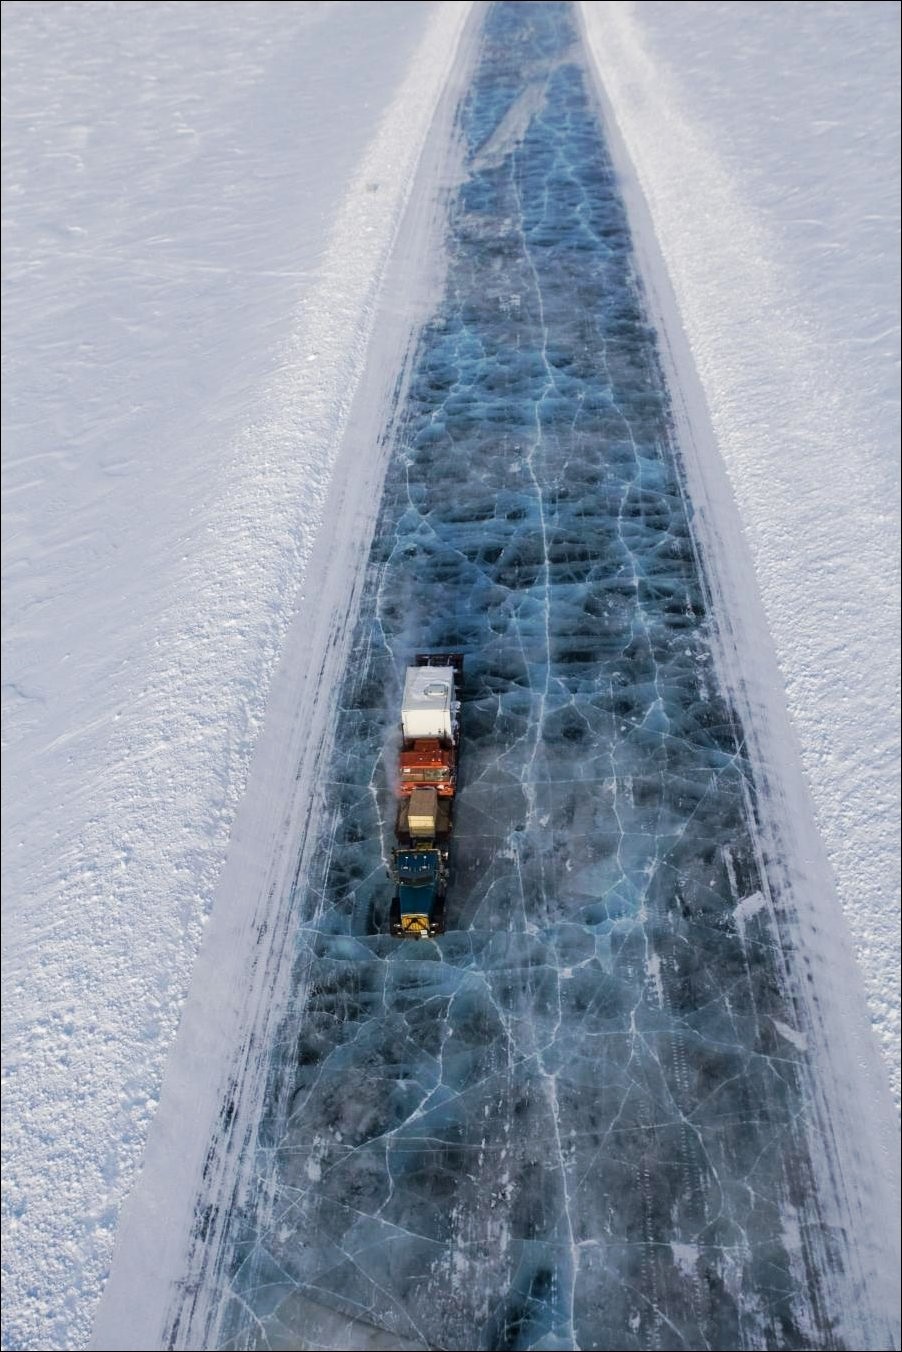  Image cocasse  Autoroute de glace , photo blague
              